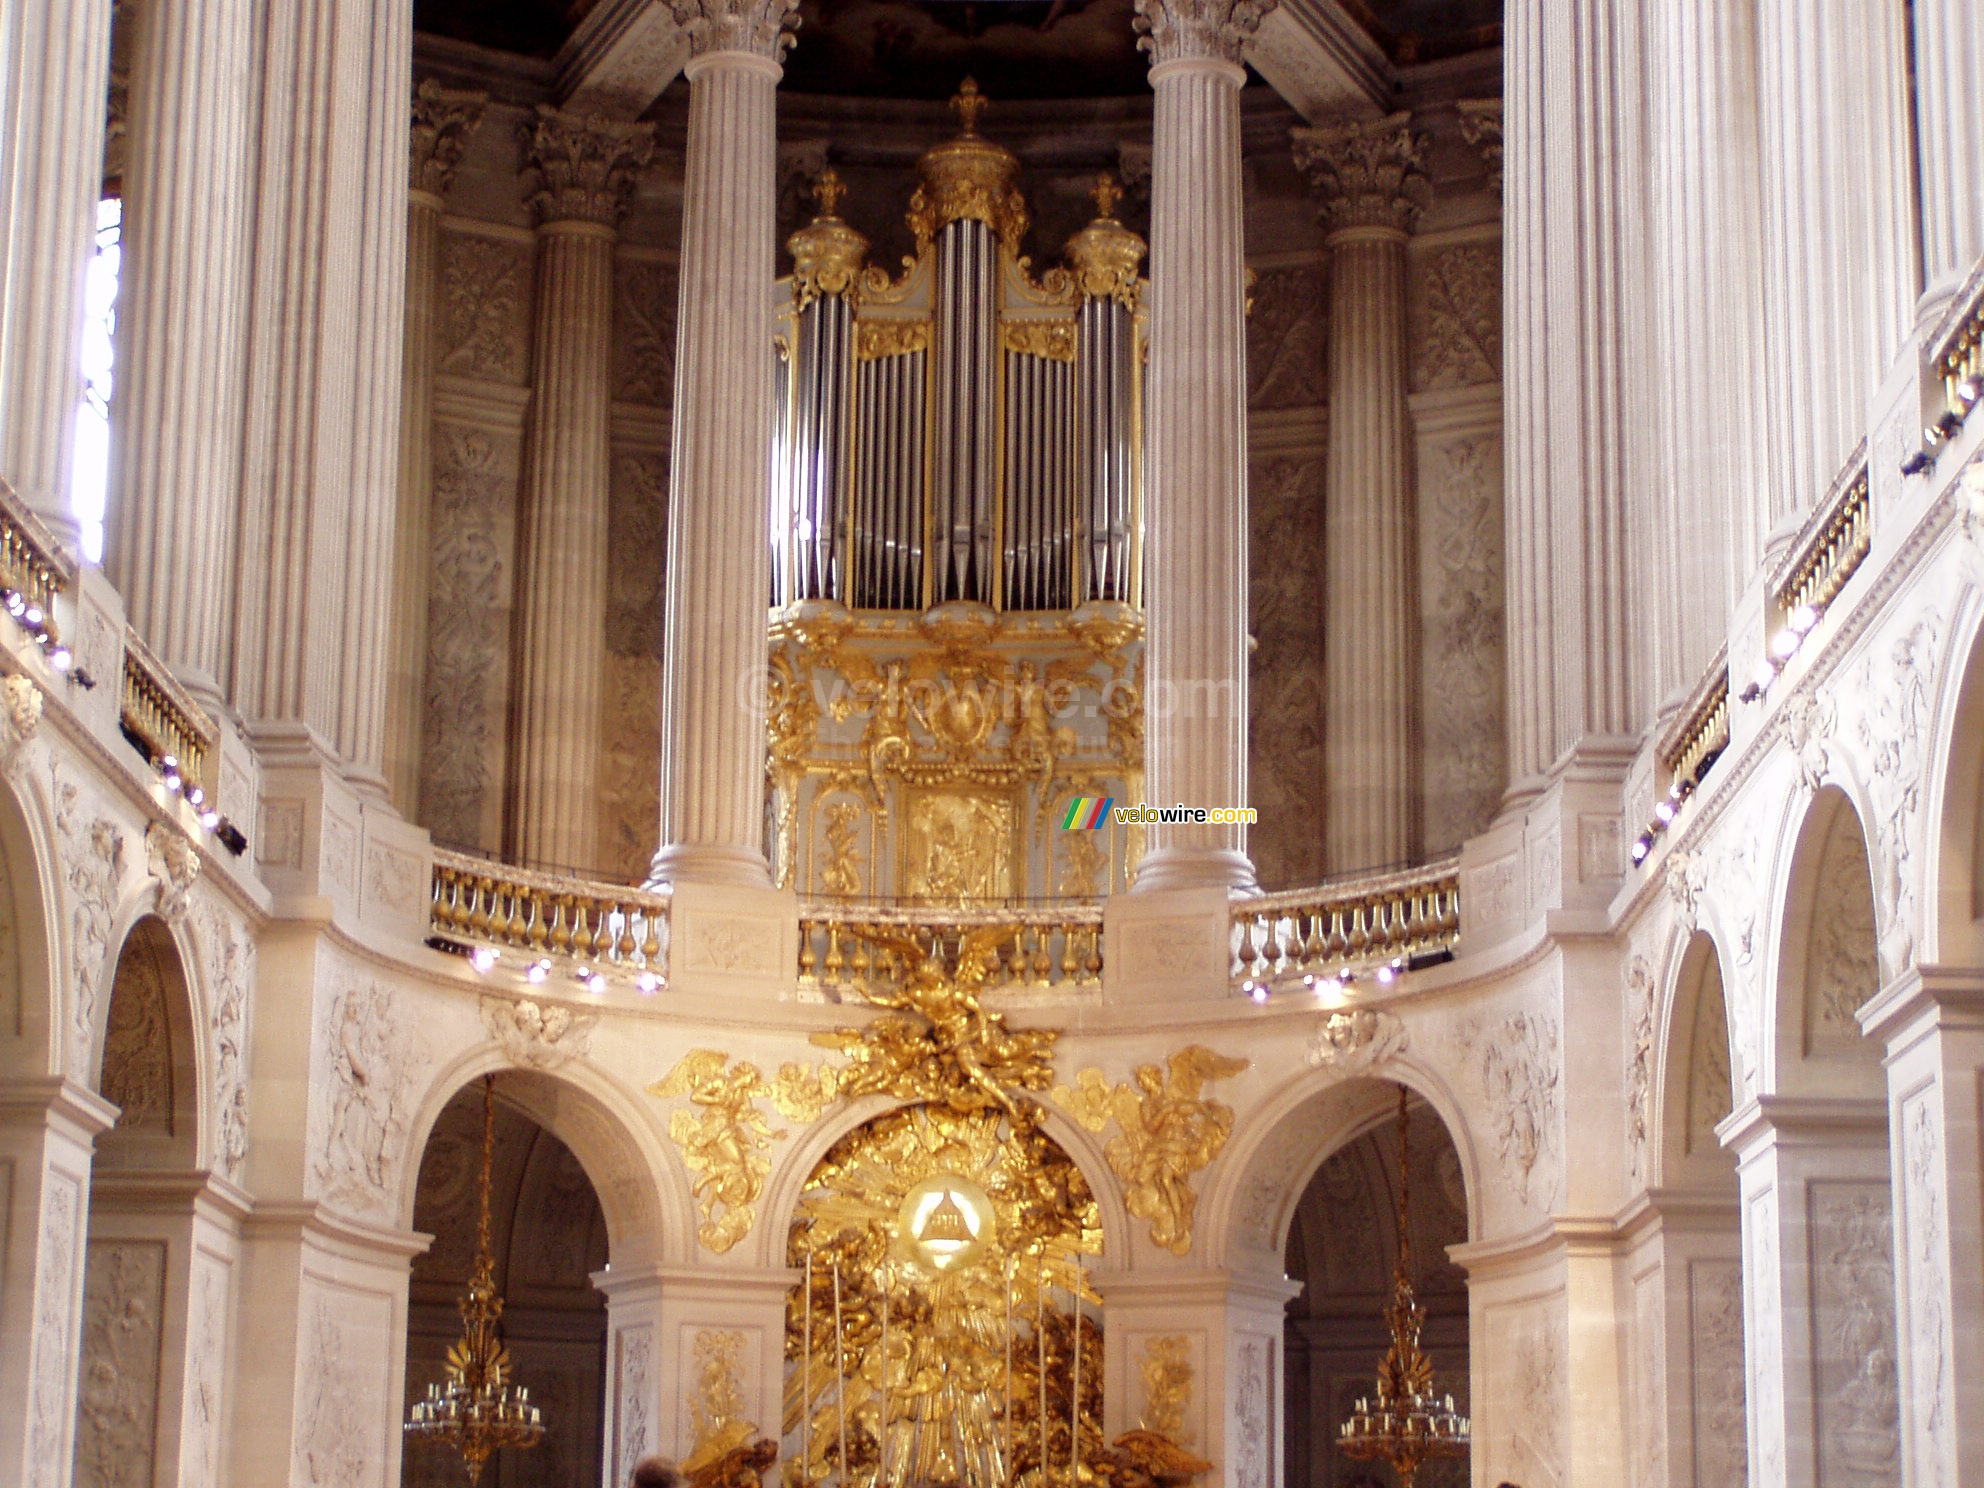 Het orgel boven het altaar in de kapel van het kasteel van Versailles